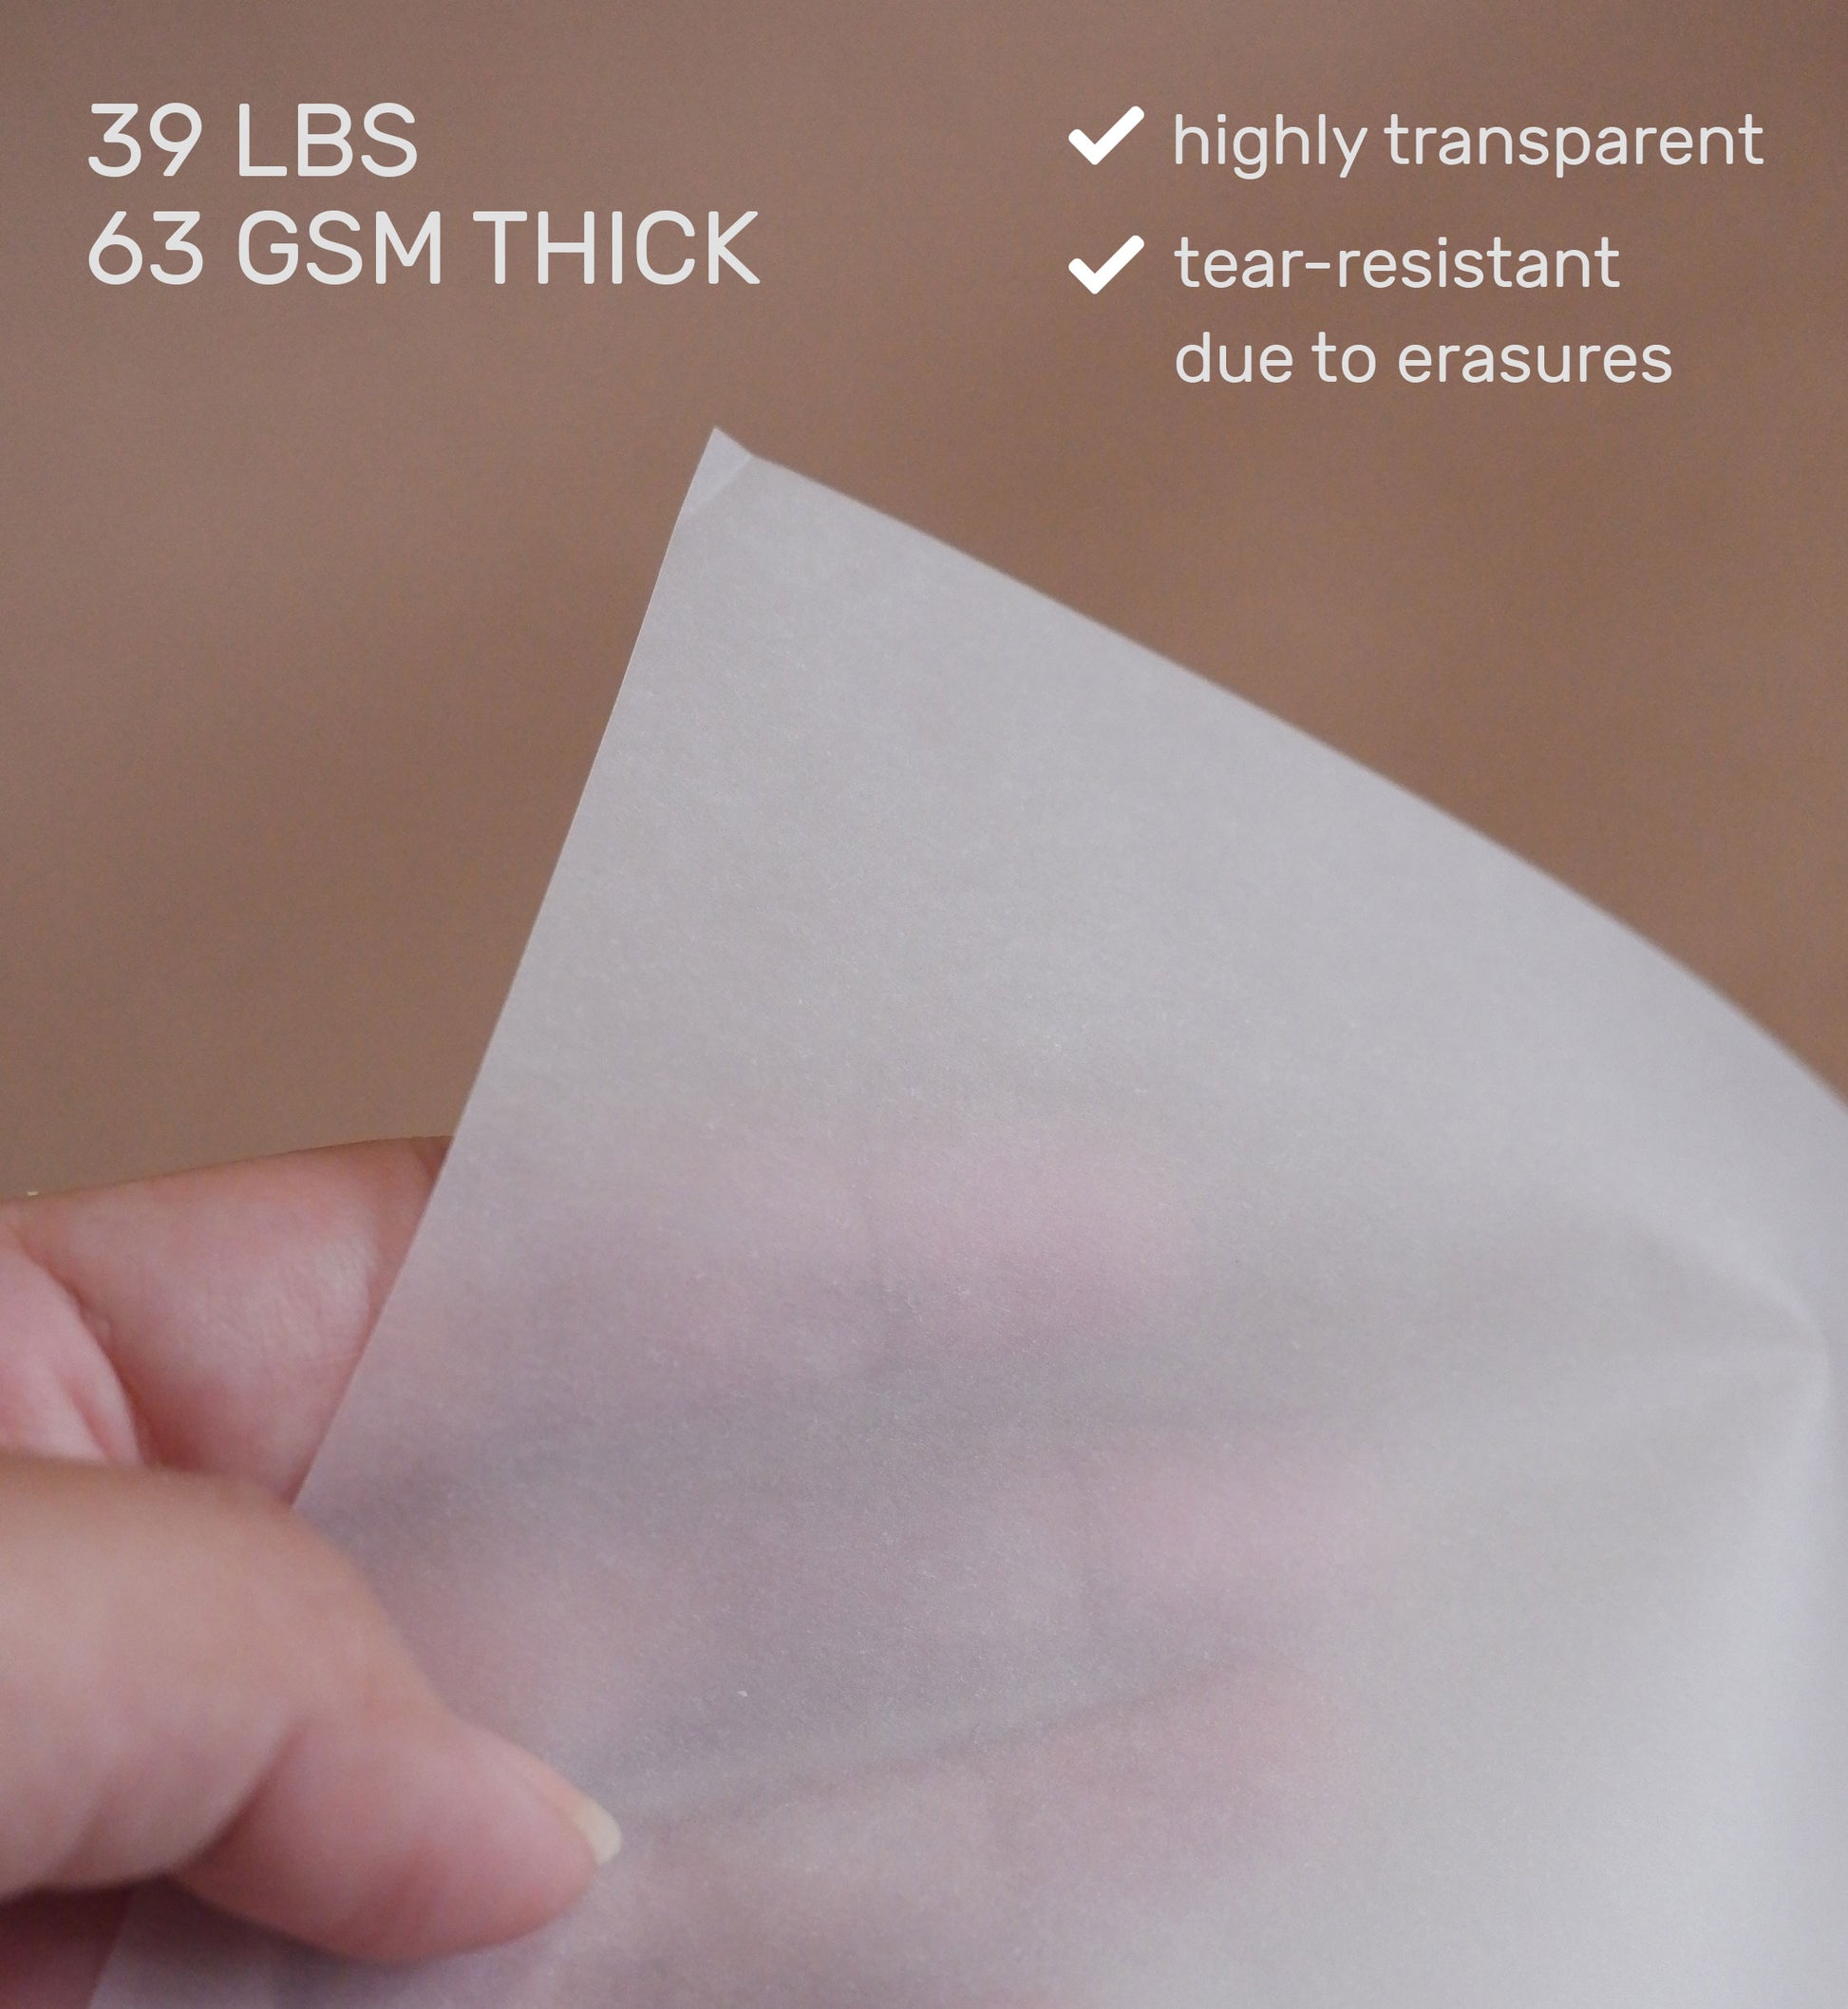 Tracing Paper Pad, 39lb - 9 x 12 - 100 Transparent Sheets